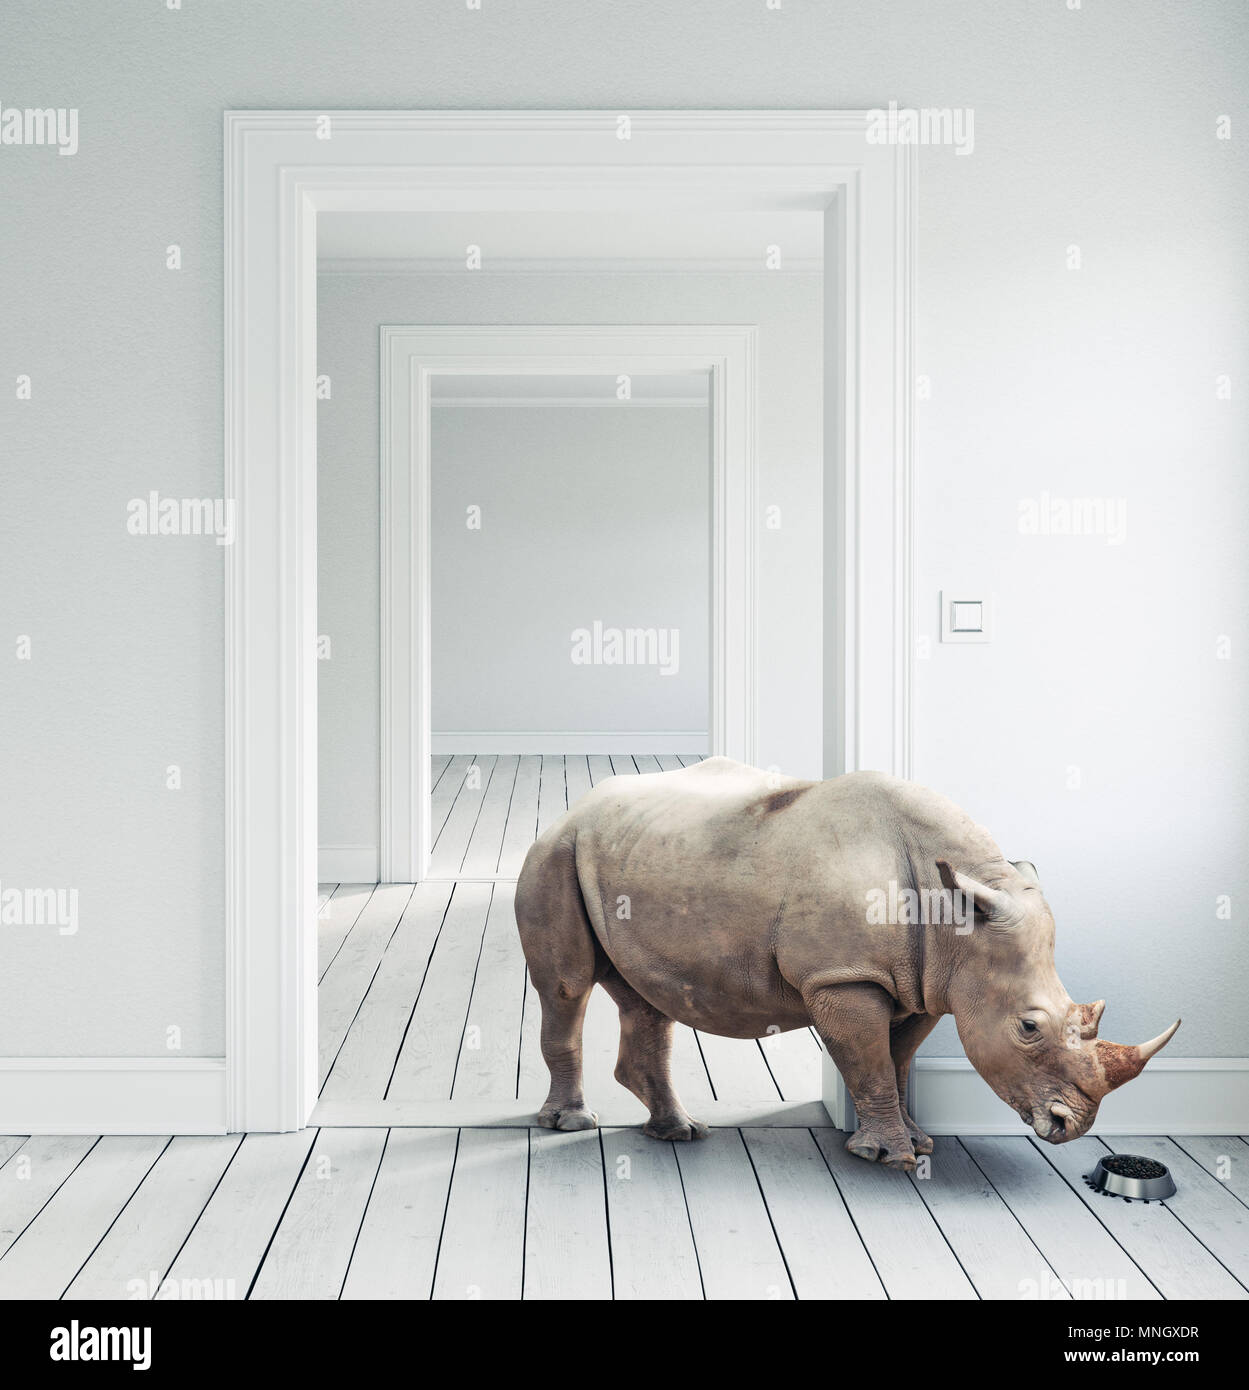 Rhino in camera come un animale domestico. CG e combinazione di foto Foto Stock